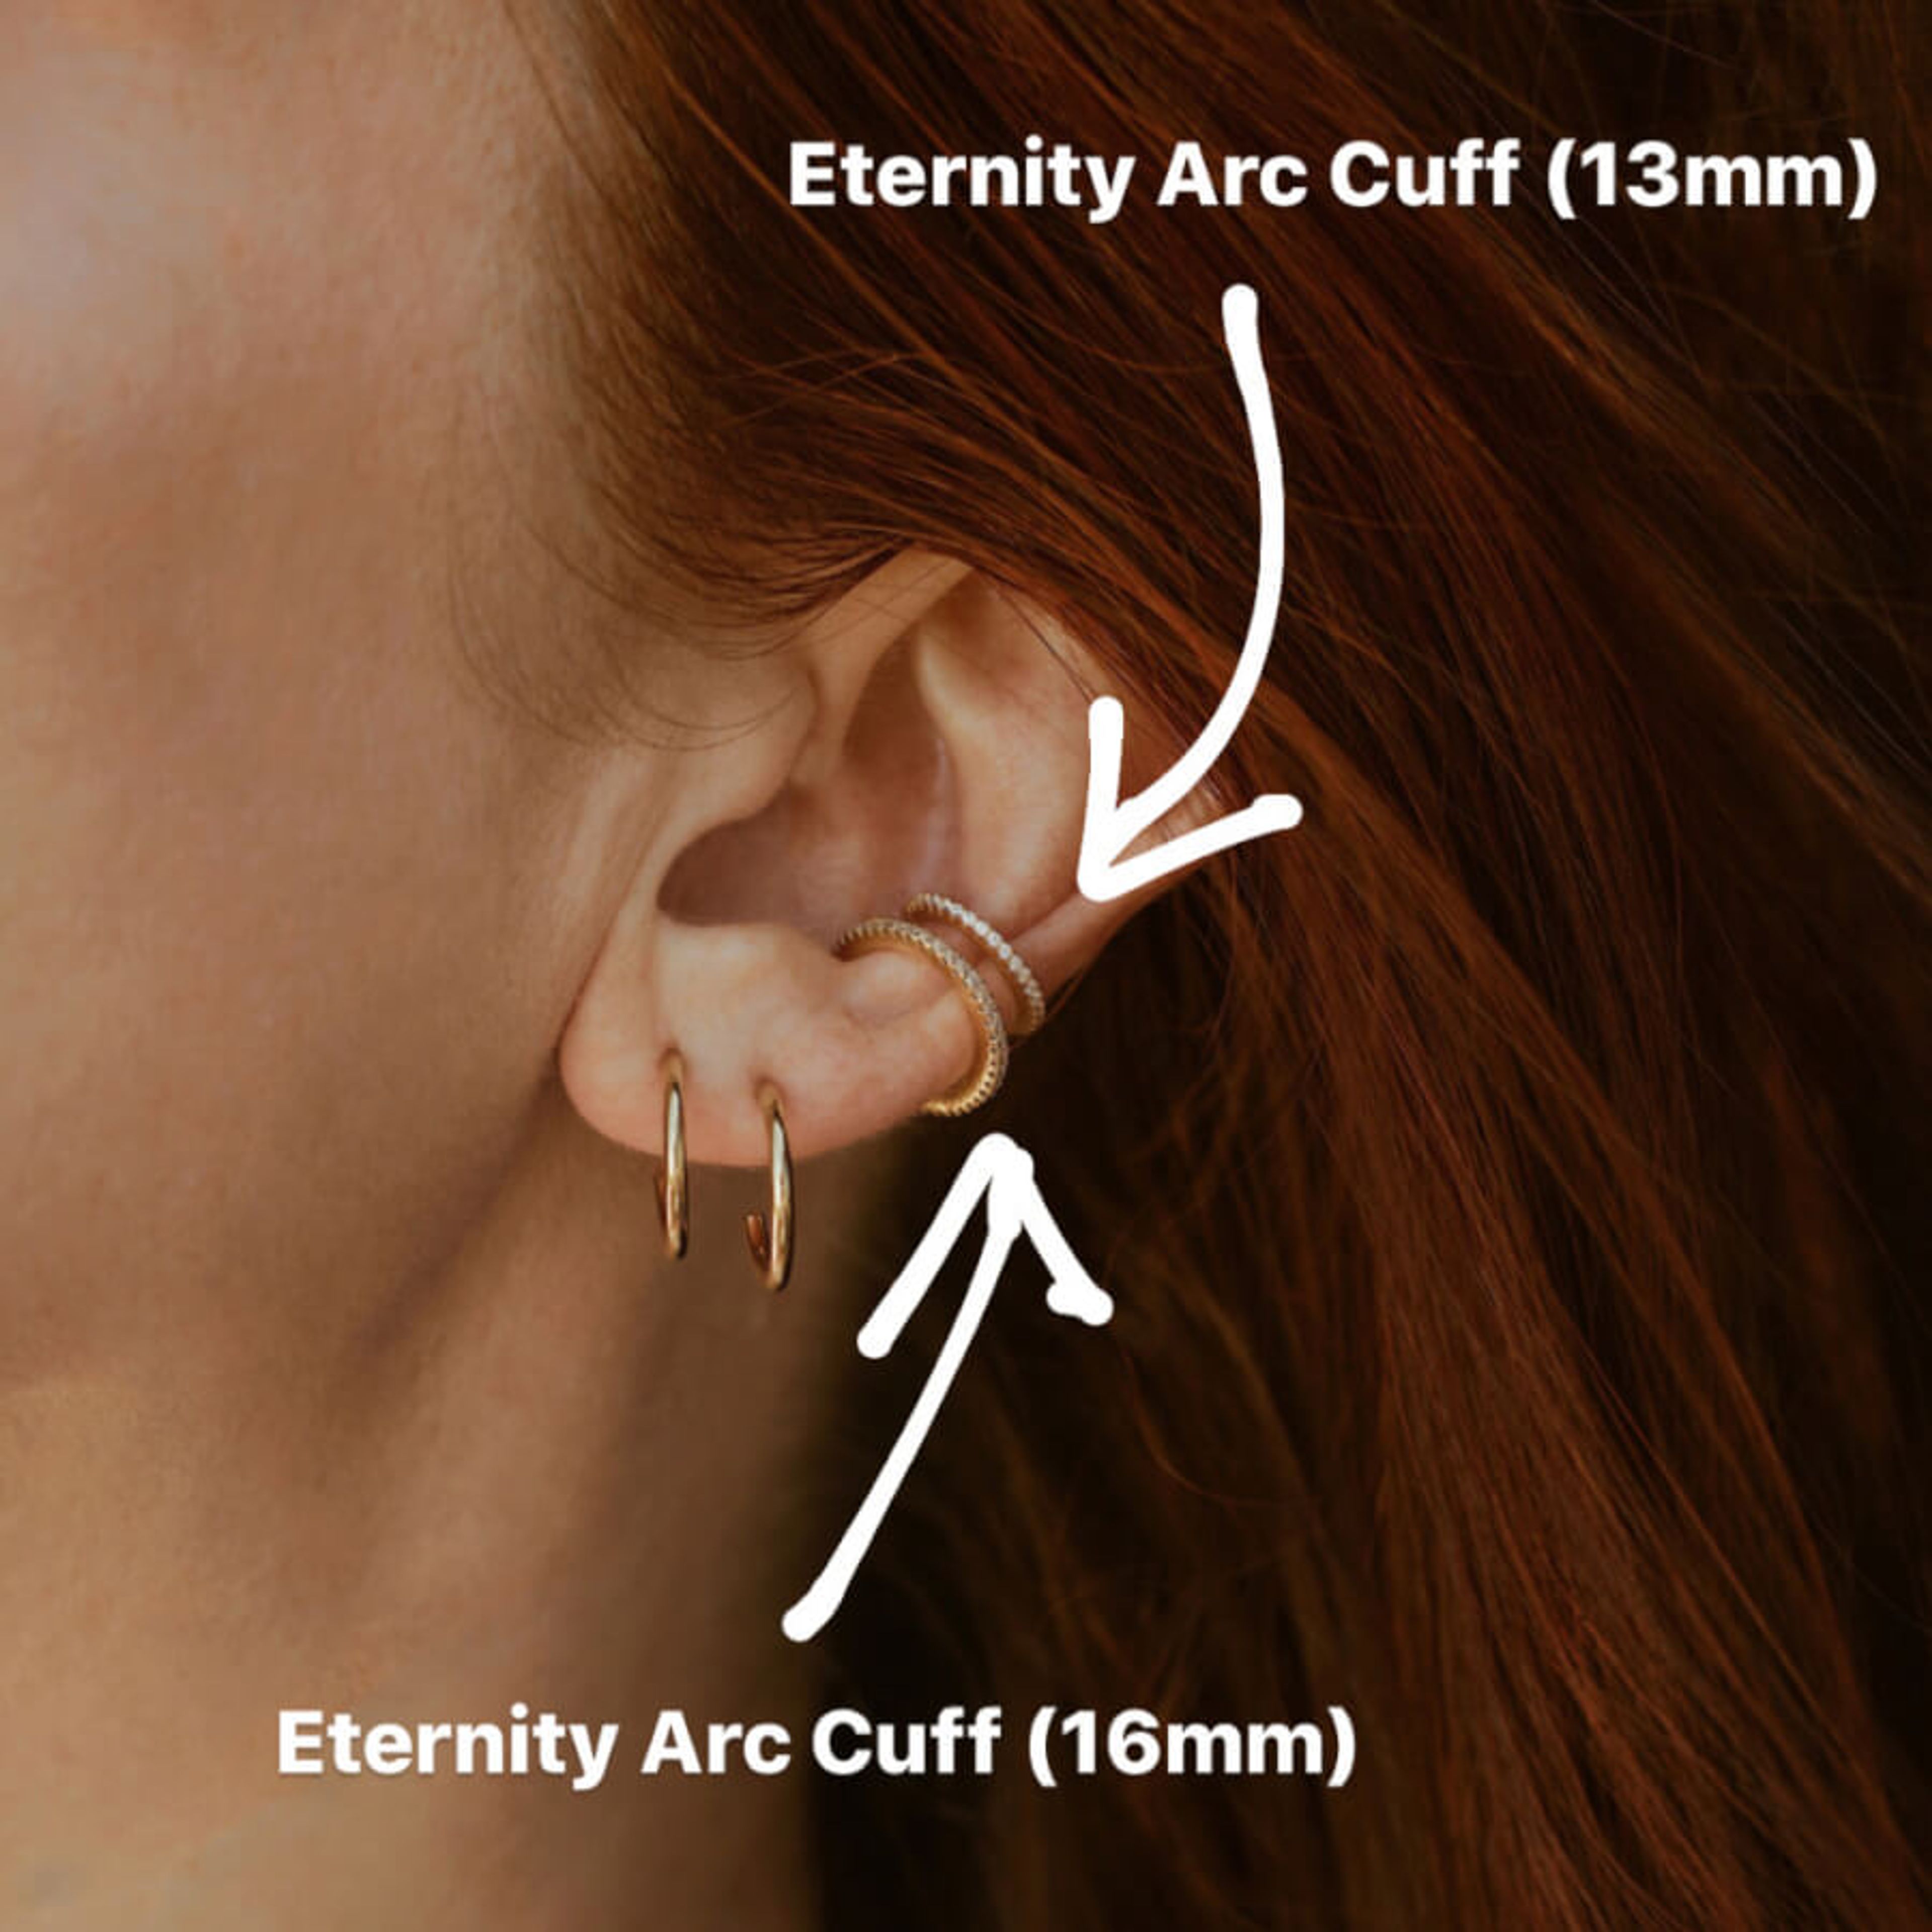 Eternity Ear Cuff